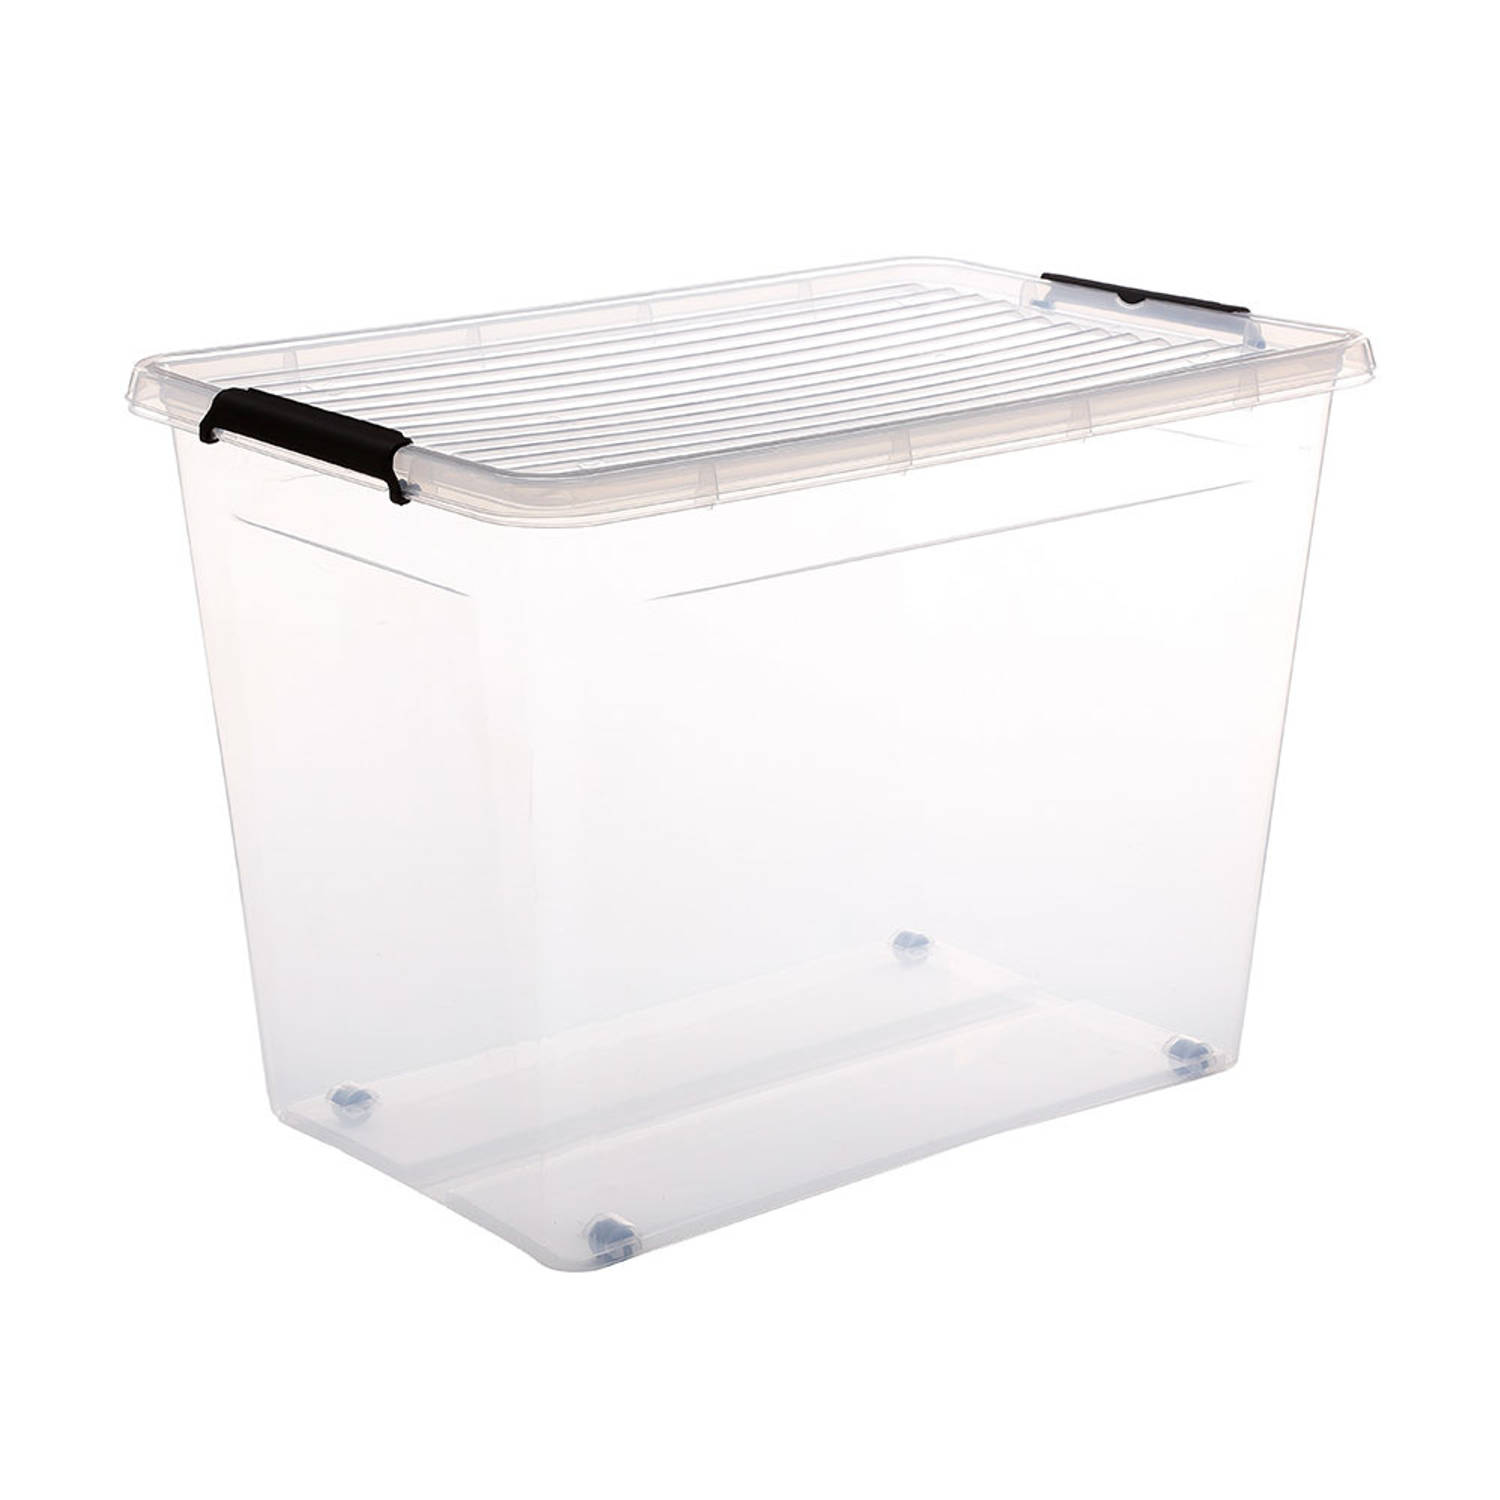 Five® Doorzichtige opbergboxen met clipsluiting 80 liter - 80 liter - rolbaar (58 cm x 39 x 42,8 cm) - Stapelbaar, Klaar voor gebruik